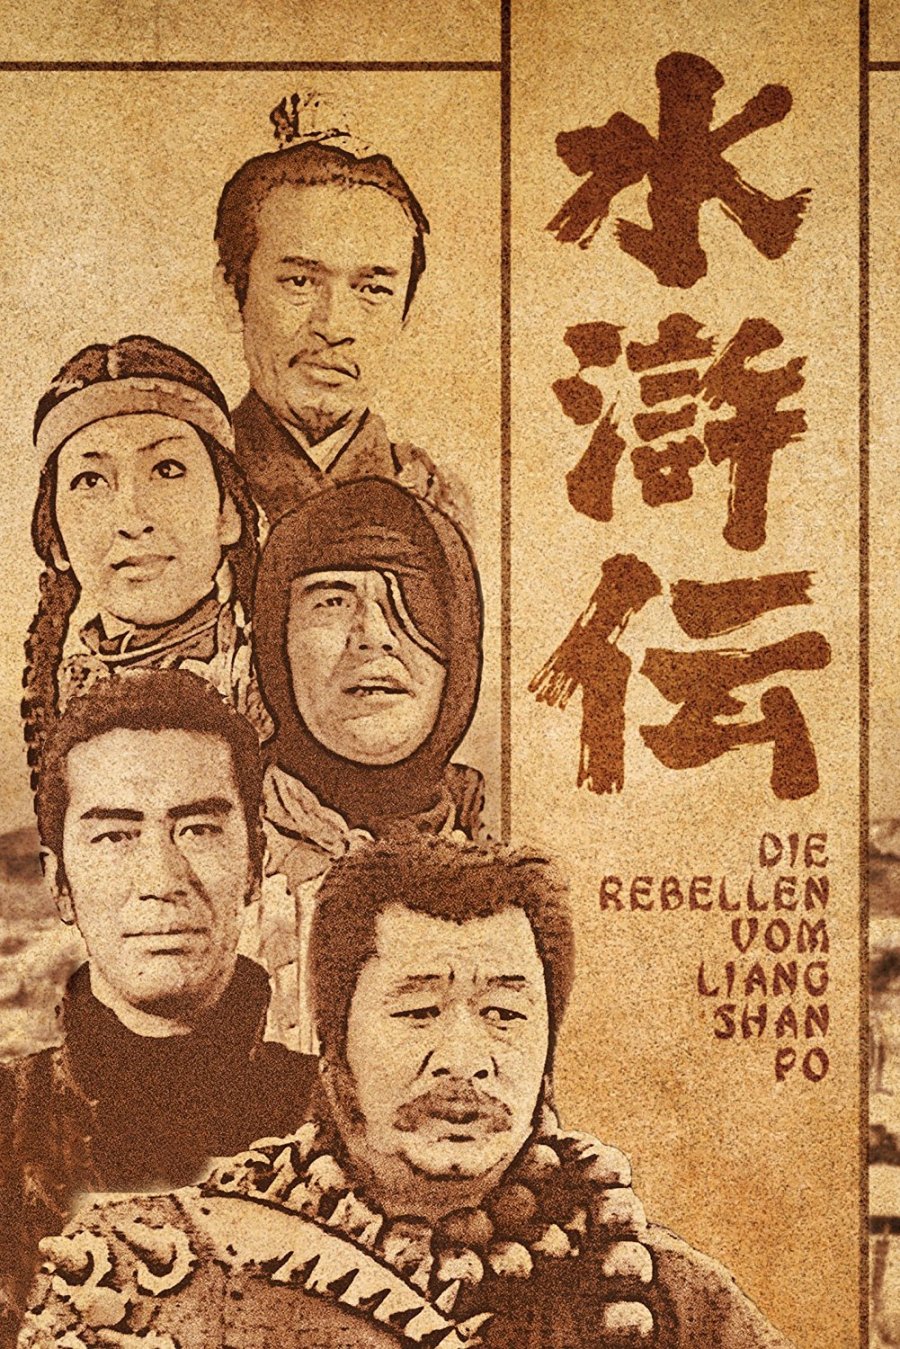 سریال جنگجویان کوهستان سریال ژاپنی با نام اصلی لب آب یا The Water Margin بود که بر اساس یک افسانه بسیار معروف چینی ساخته شده بود